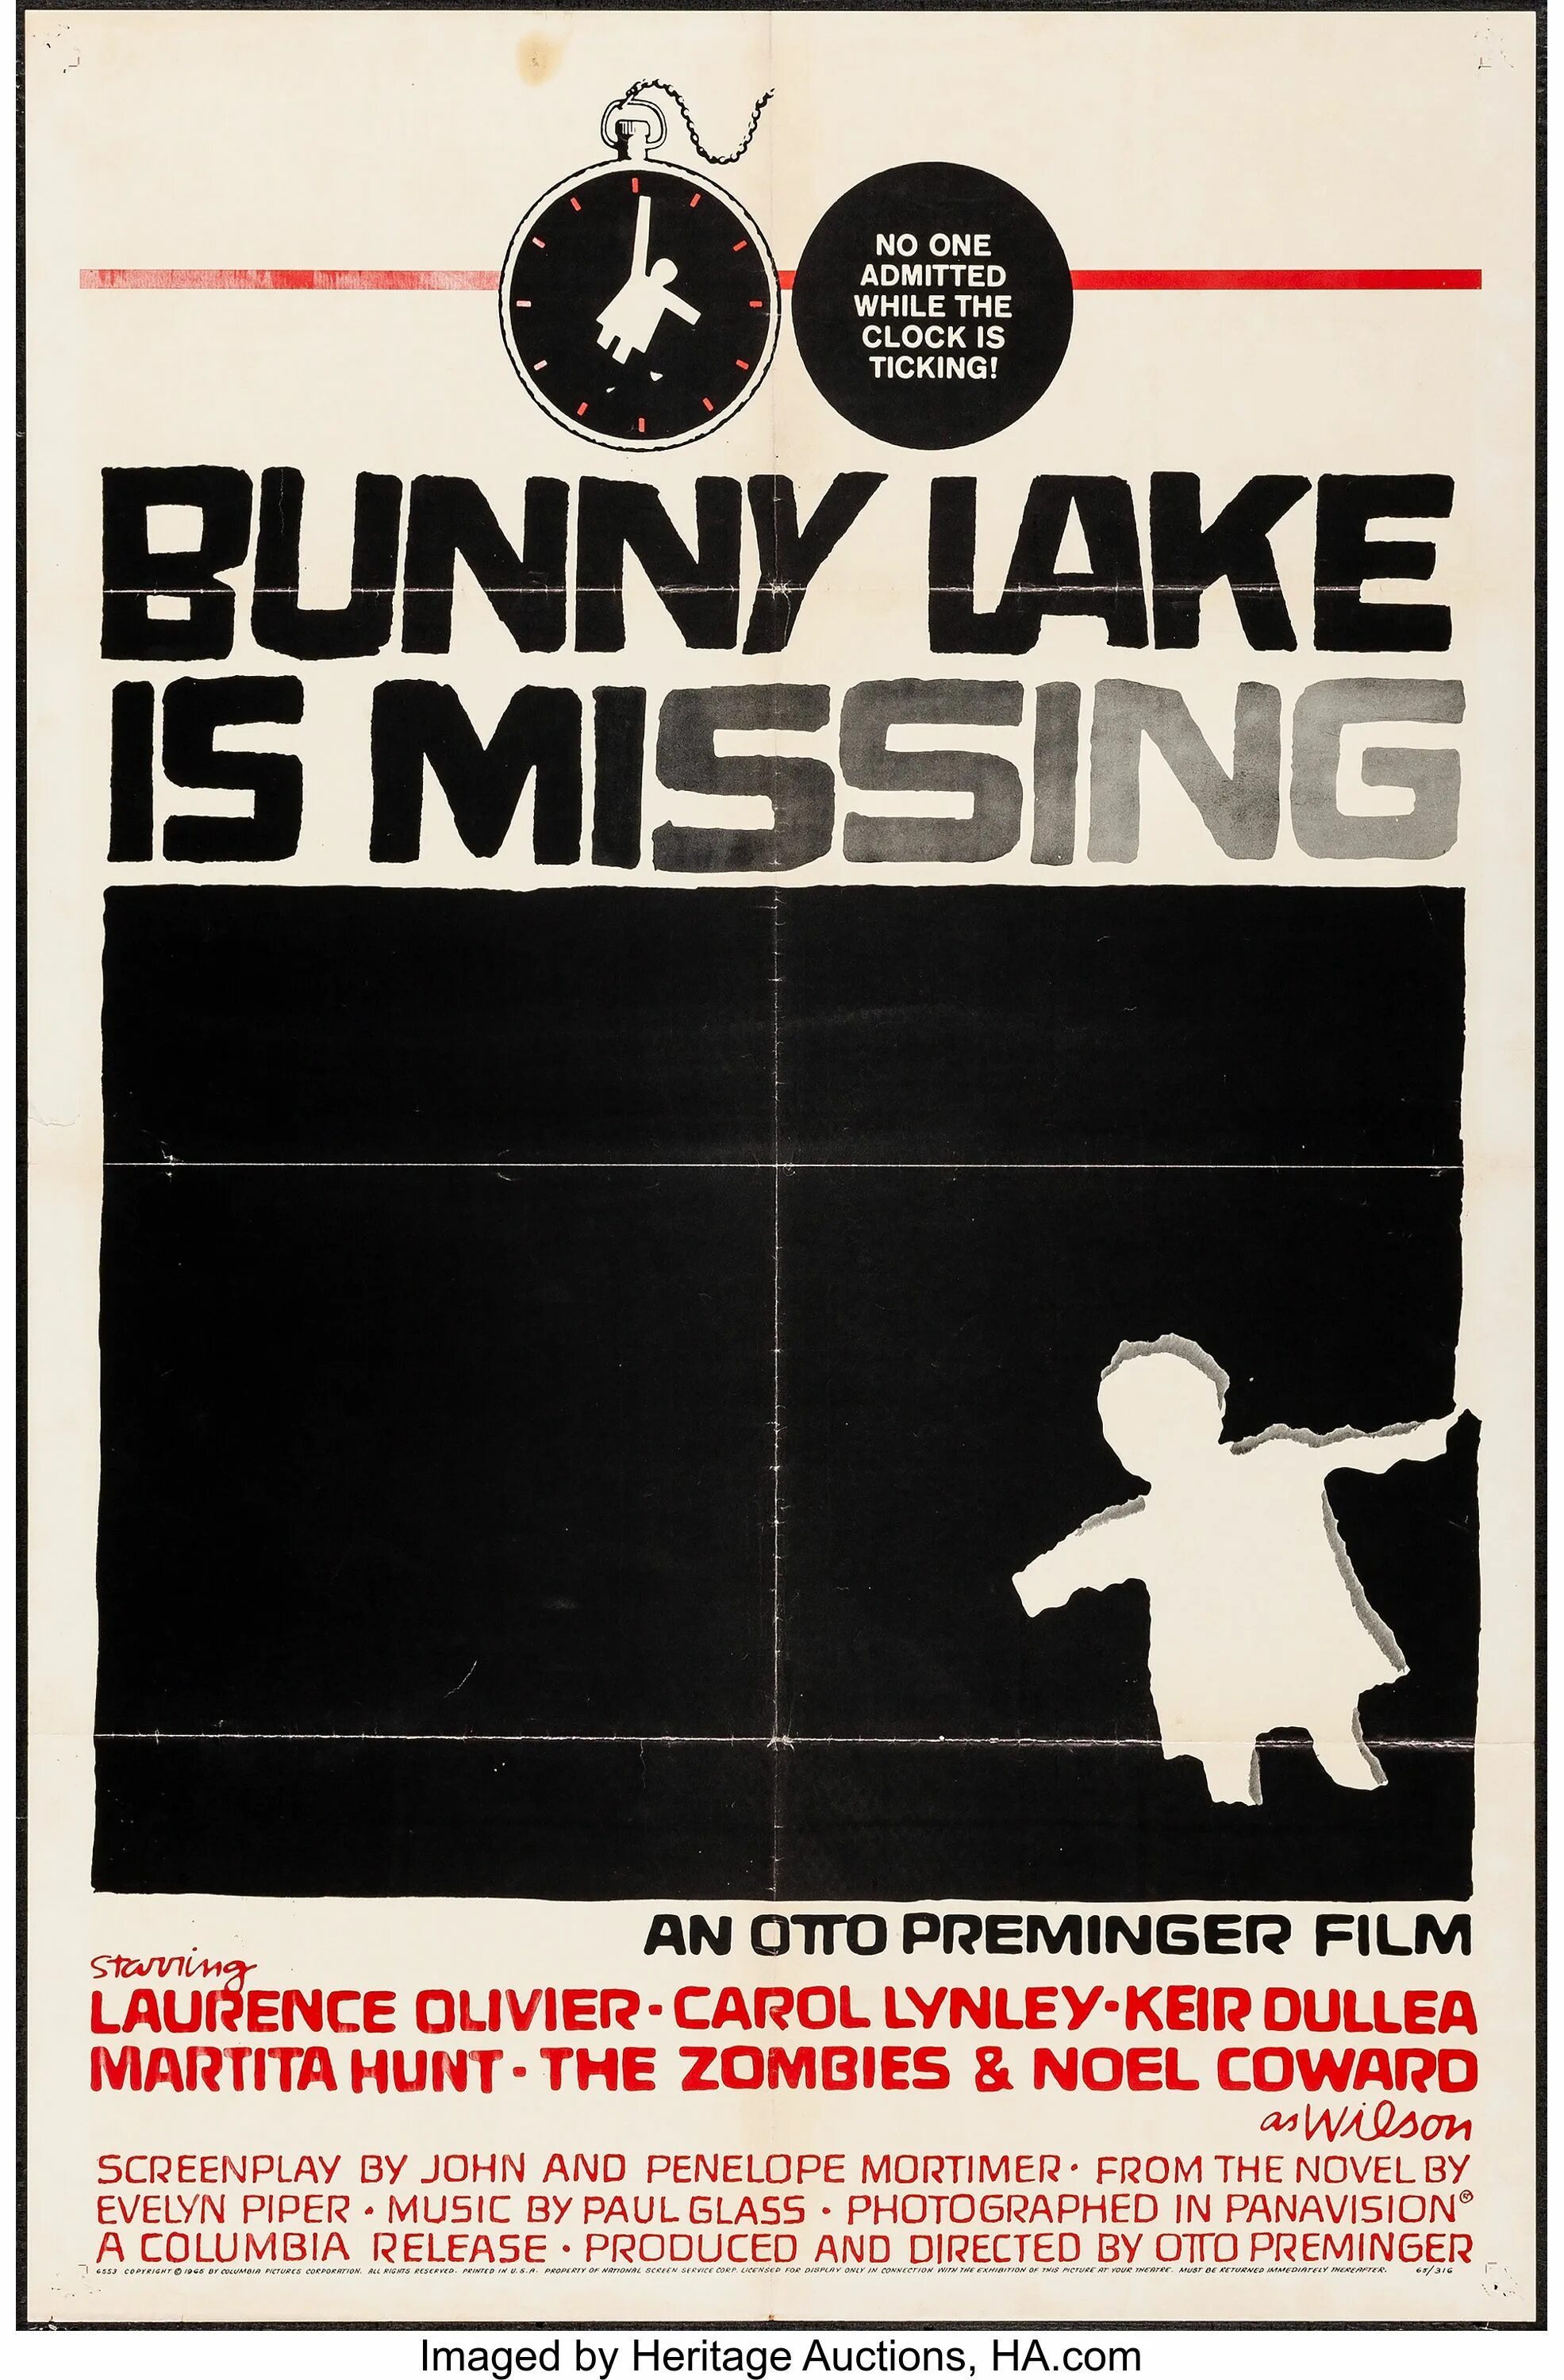 Исчезнувшая Банни Лейк / Банни Лейк исчезает / Bunny Lake is missing. Сол басс постеры. Исчезновение Банни Лейк книга. Bunny lake